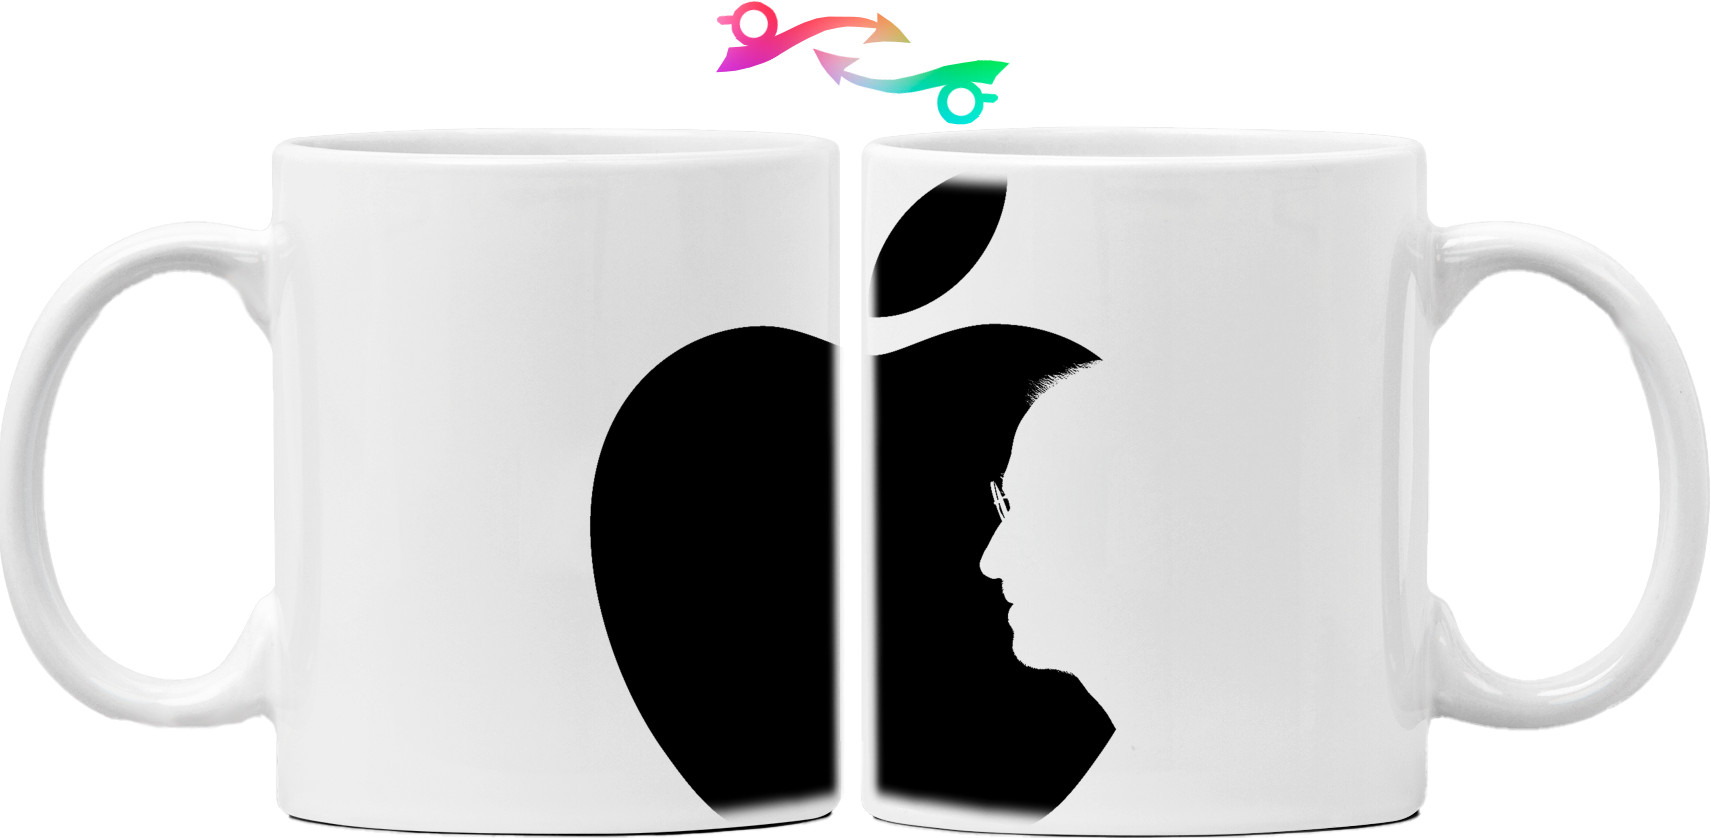 Стив Джобс Apple